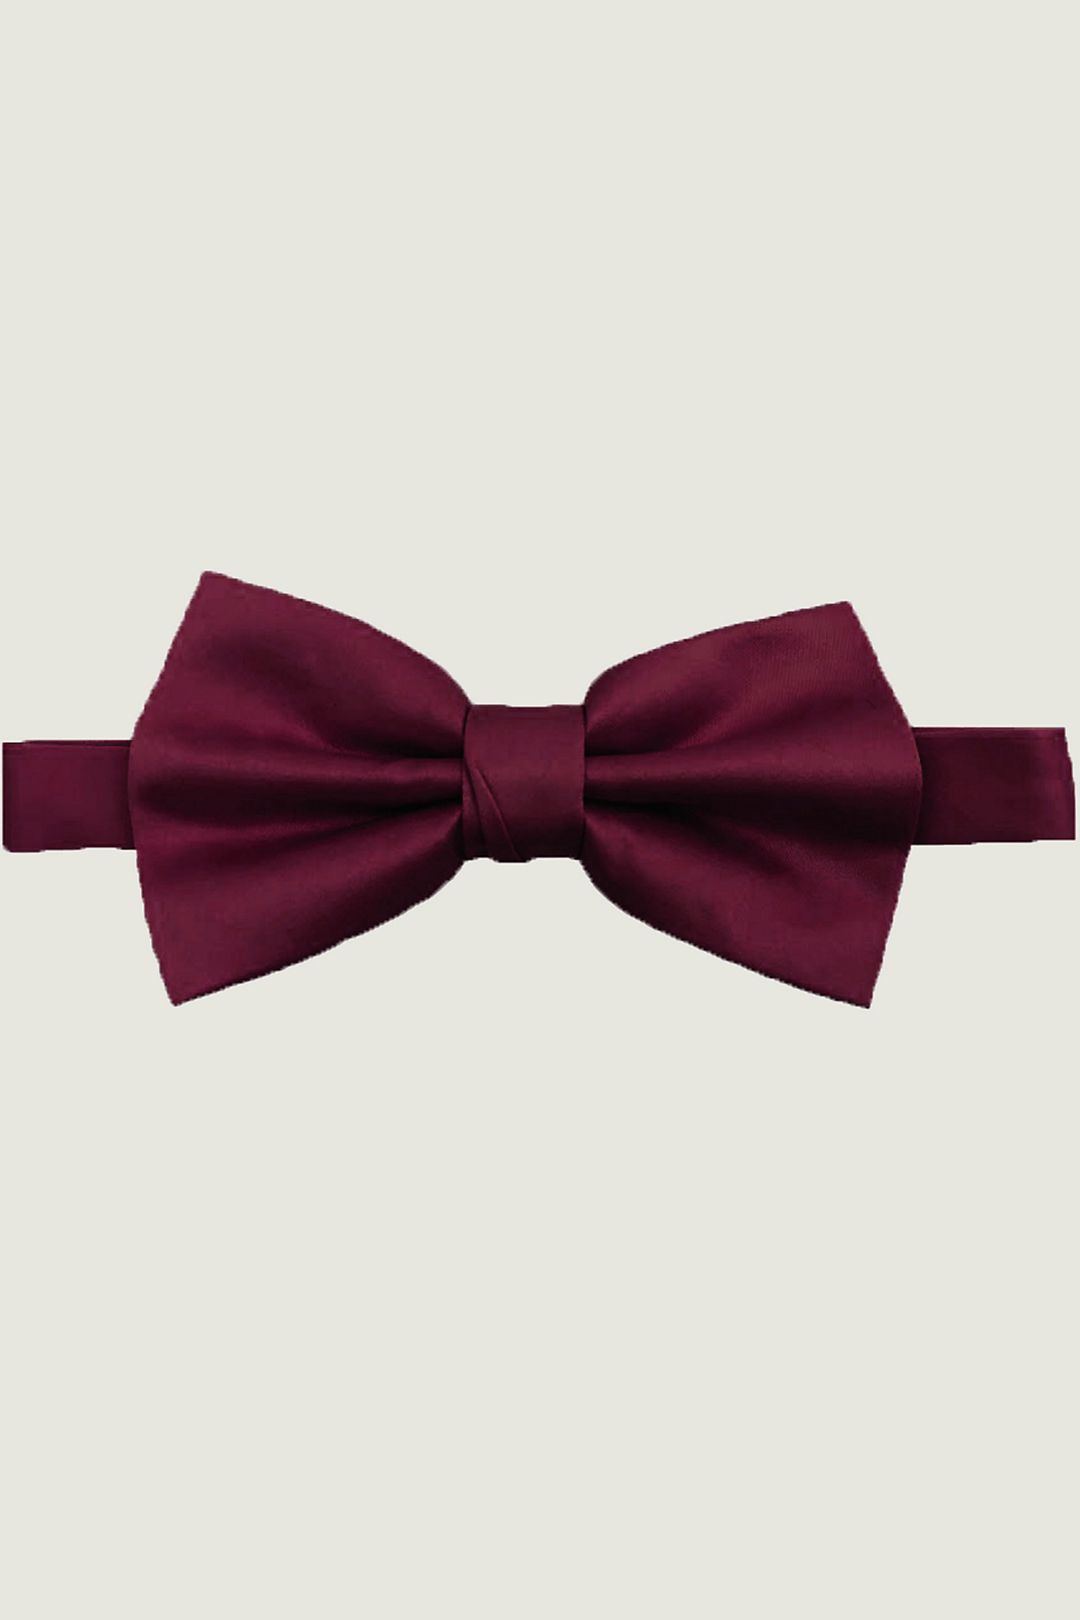 Men's Bow Neckties Set Of 9, Wedding Gift Tie Business Suit Tie +